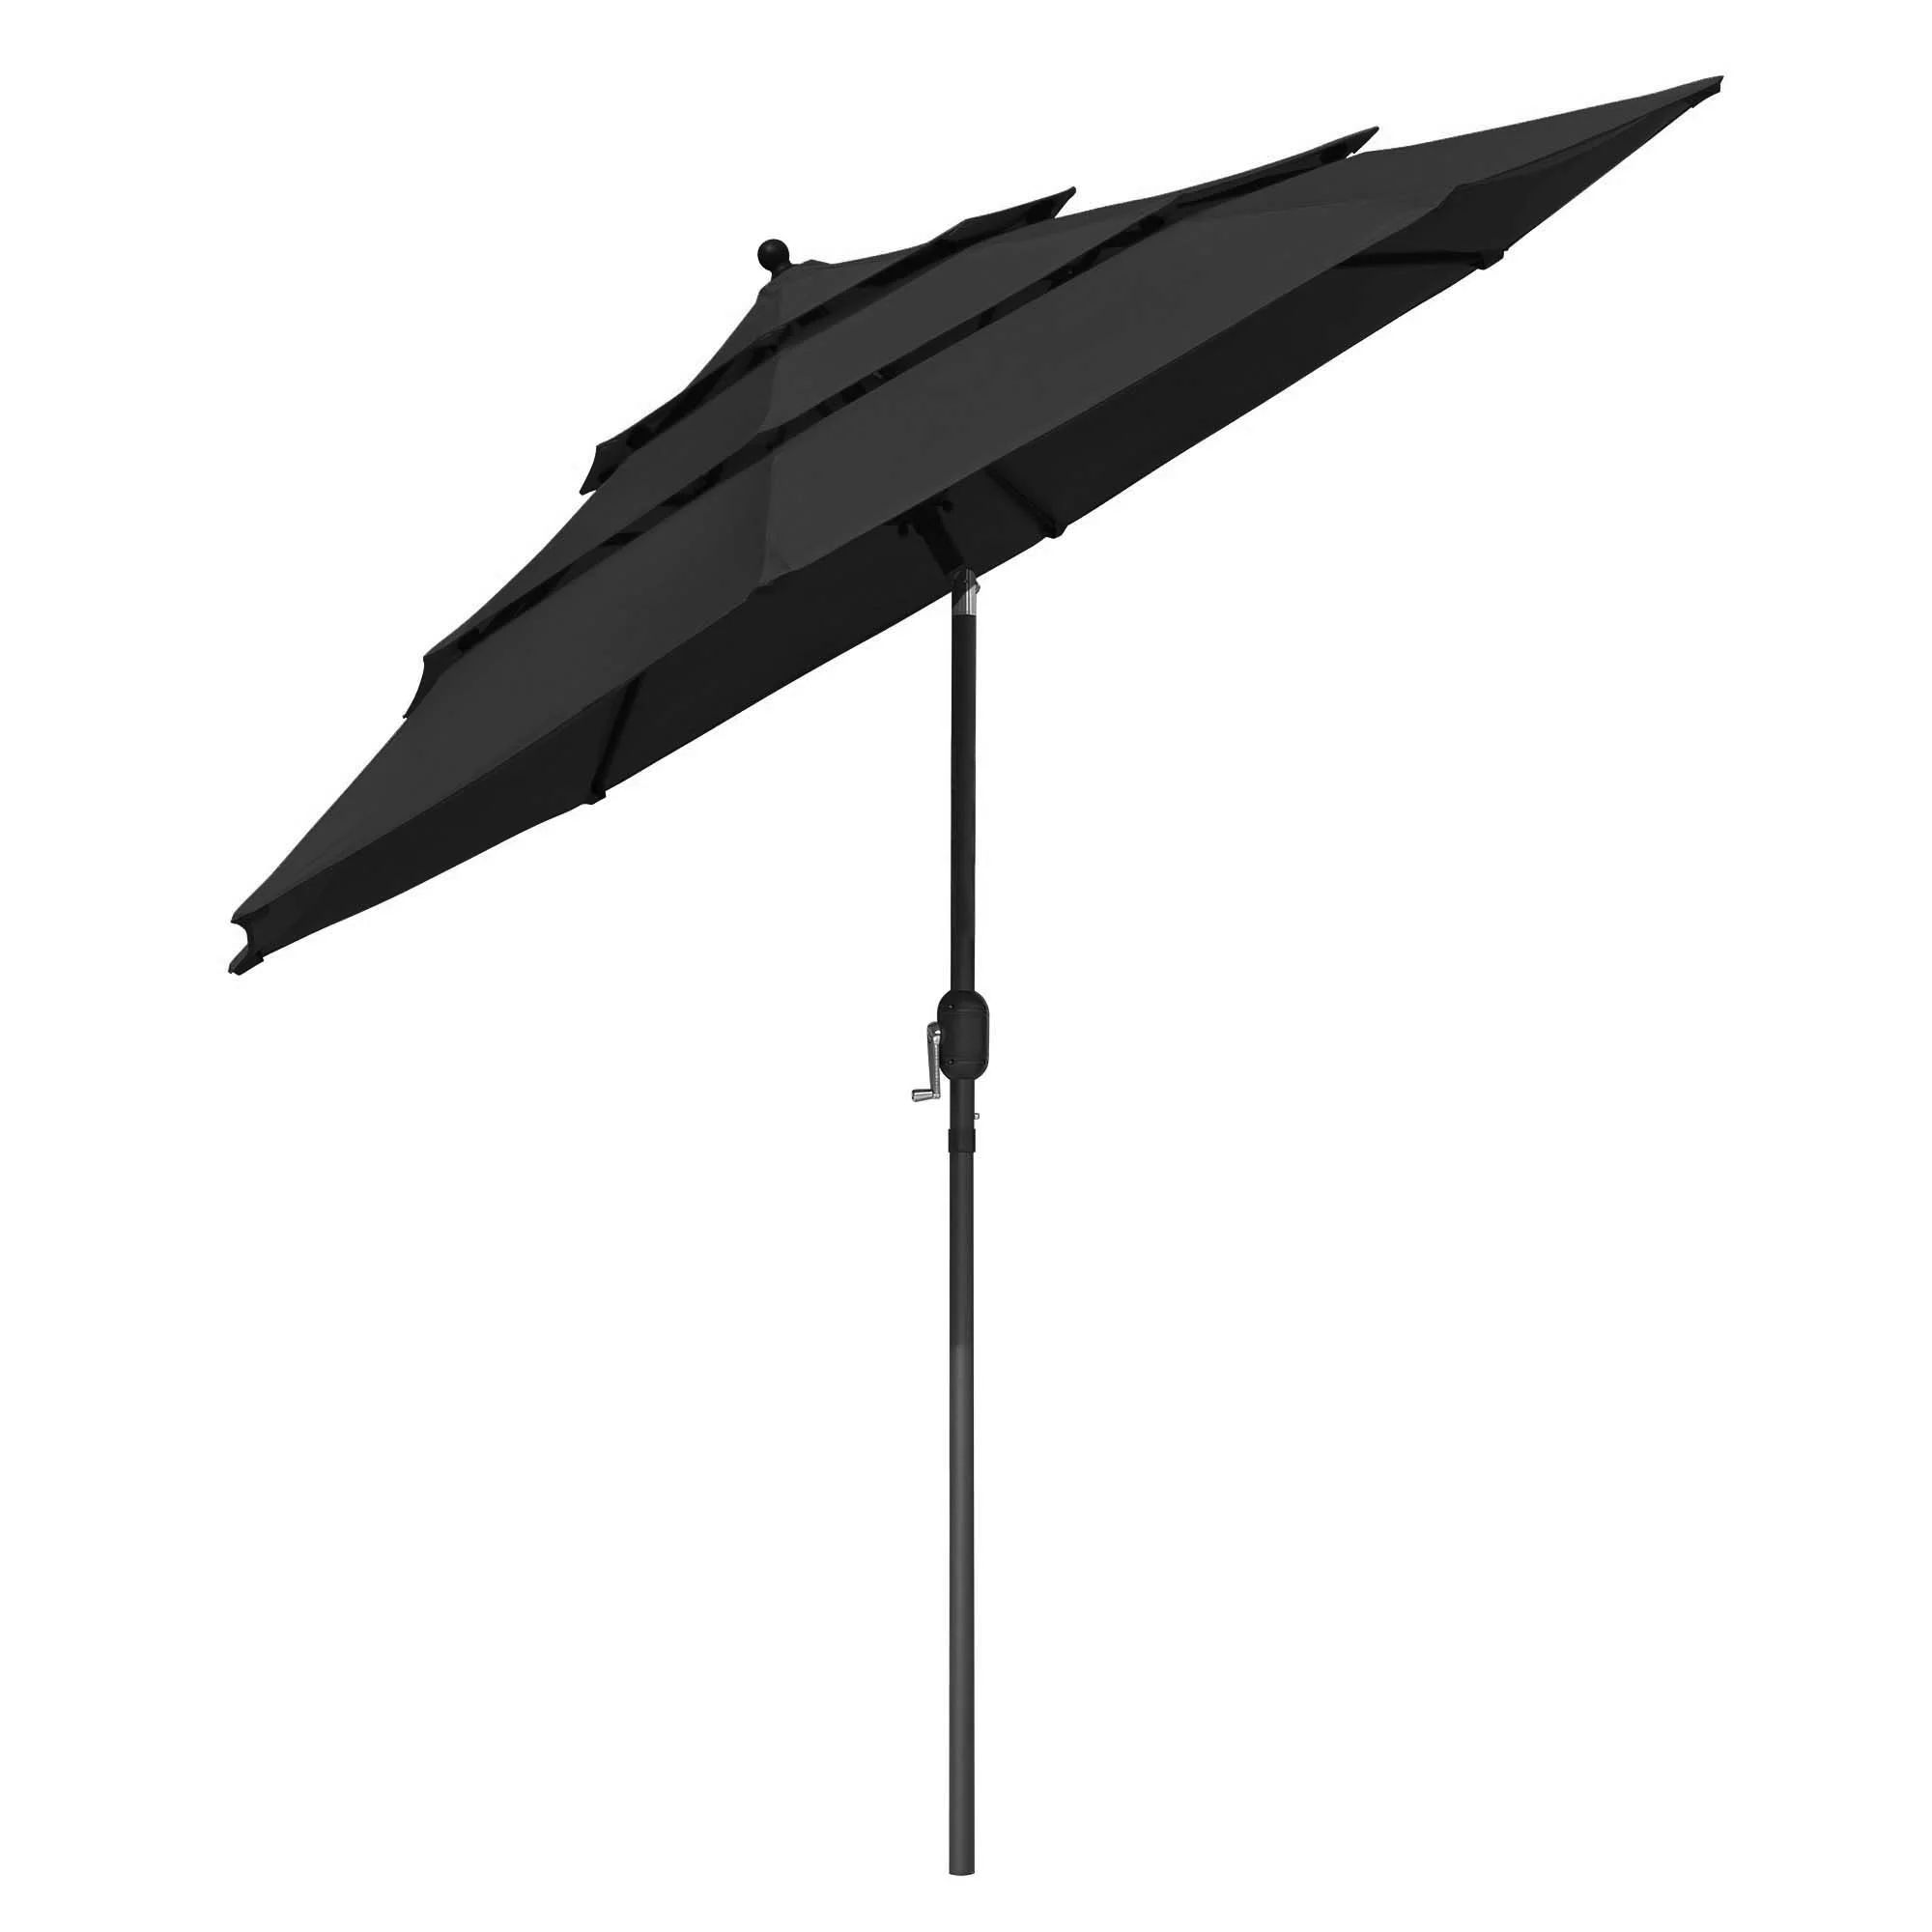 Yescom 9 Ft 3 Tier Patio Umbrella with Crank Handle Push to Tilt Aluminum Garden Home | Walmart (US)